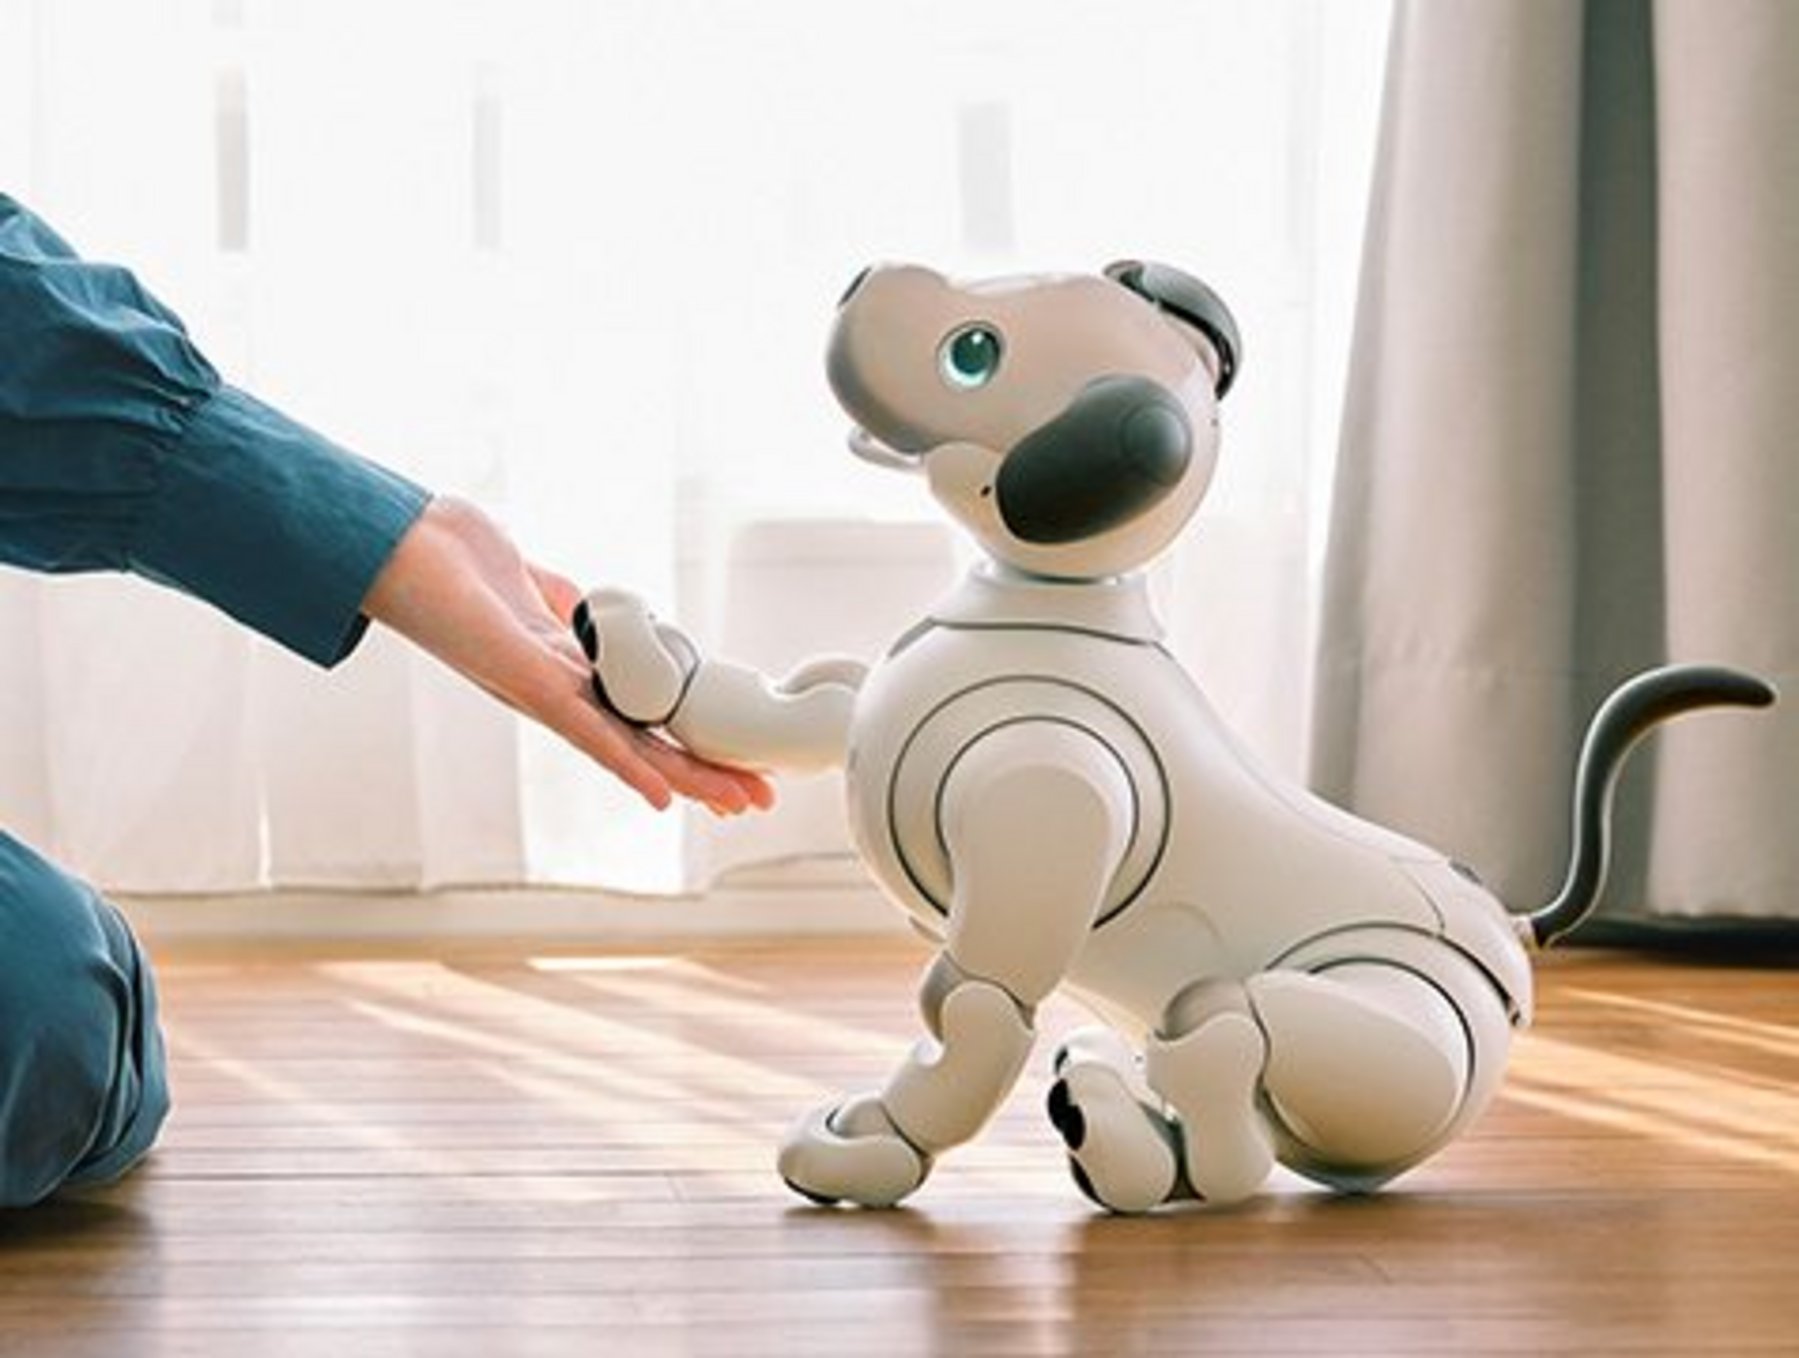 maskine film eksegese Top 10 most popular personal robots | Mobile Magazine